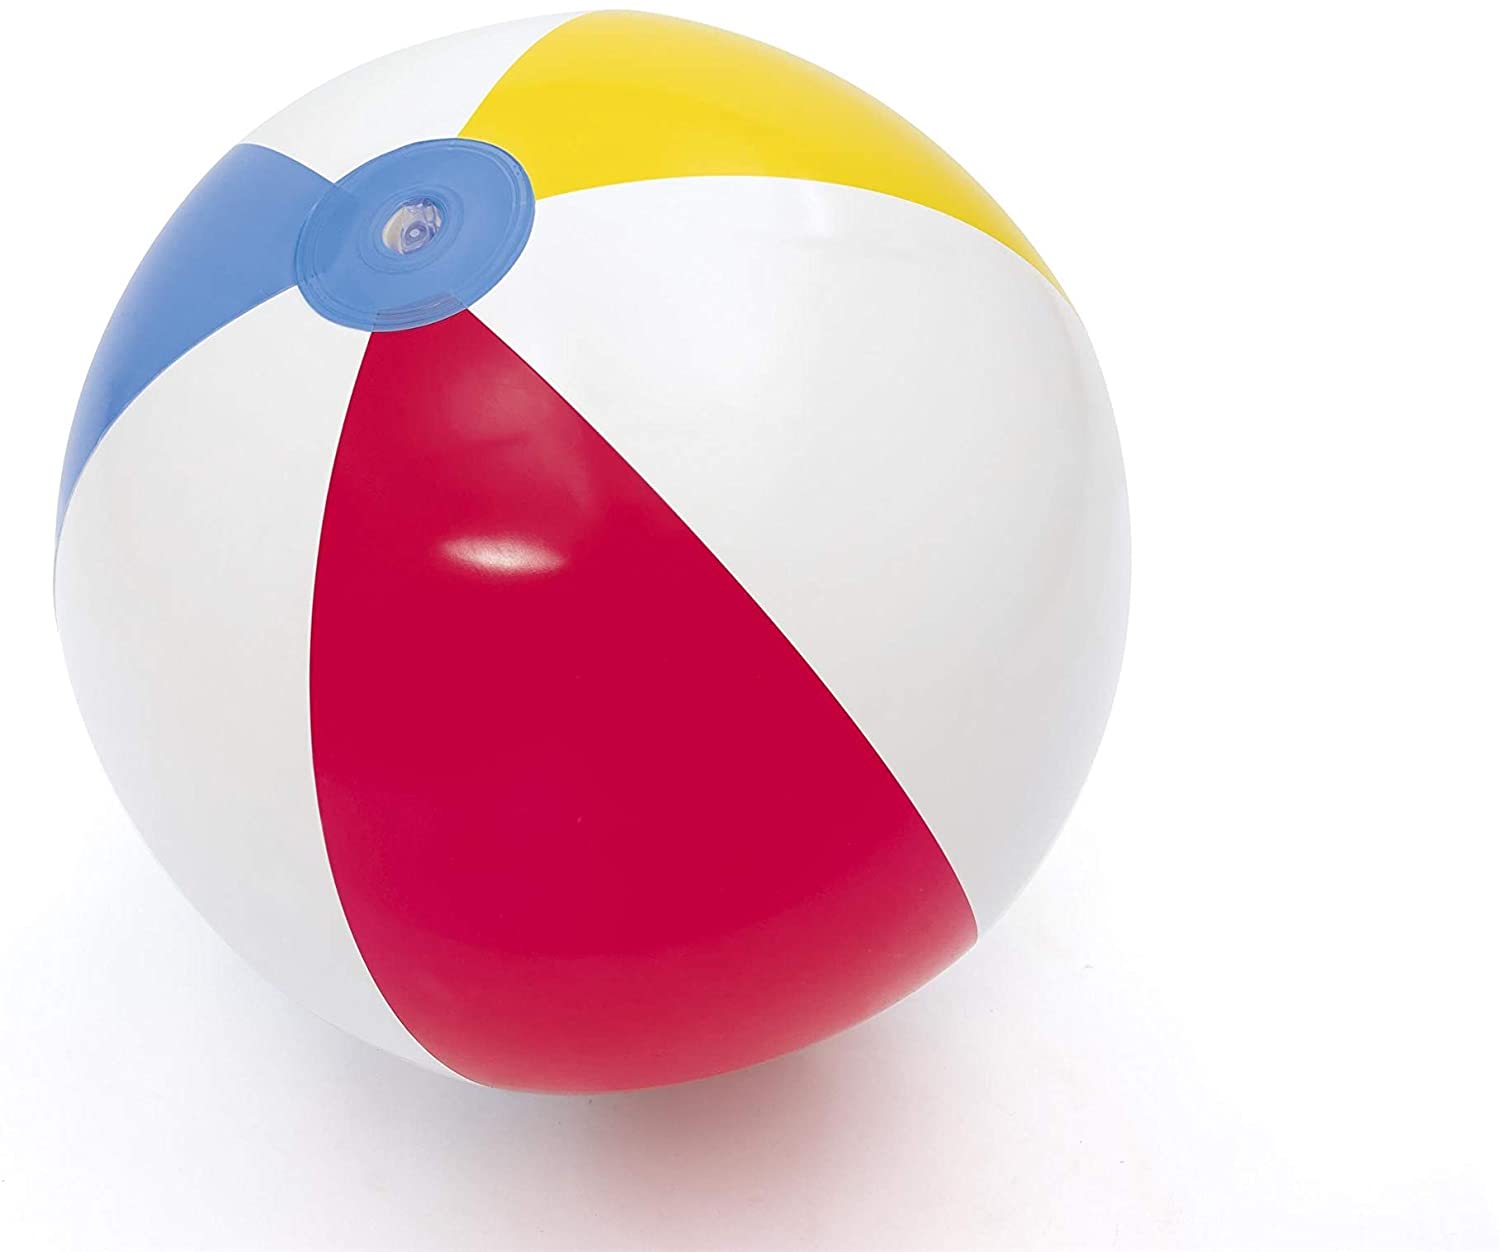 CRUISE. Ballon de plage gonflable - Articles gonflables